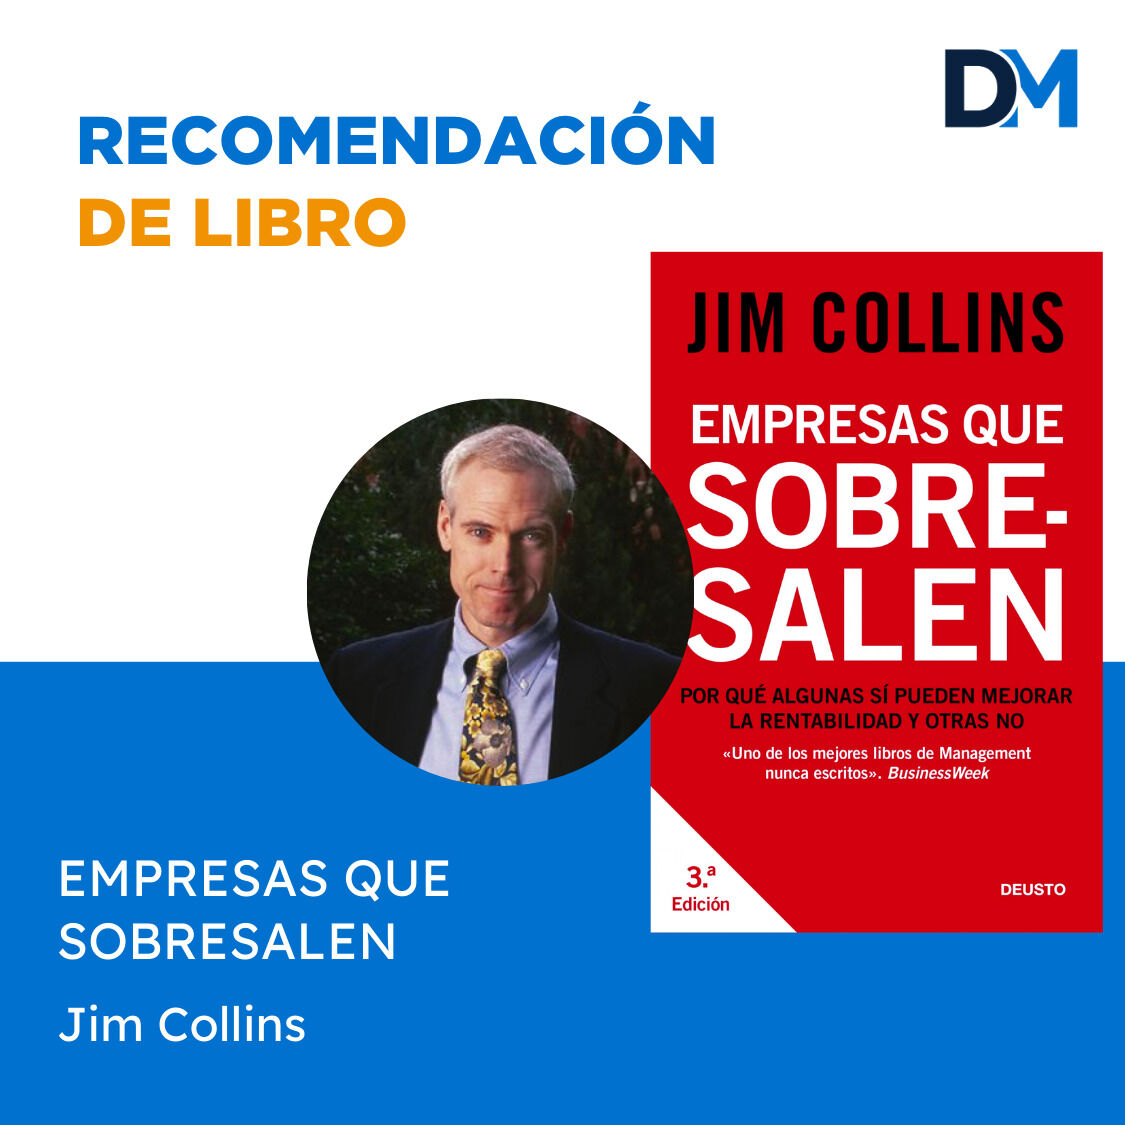 🔍 Jim Collins analiza empresas excepcionales y presenta principios clave para el éxito sostenible. Lleva tu organización de buena a grande. #ÉxitoEmpresarial #Liderazgo #DesarrolloOrganizacional